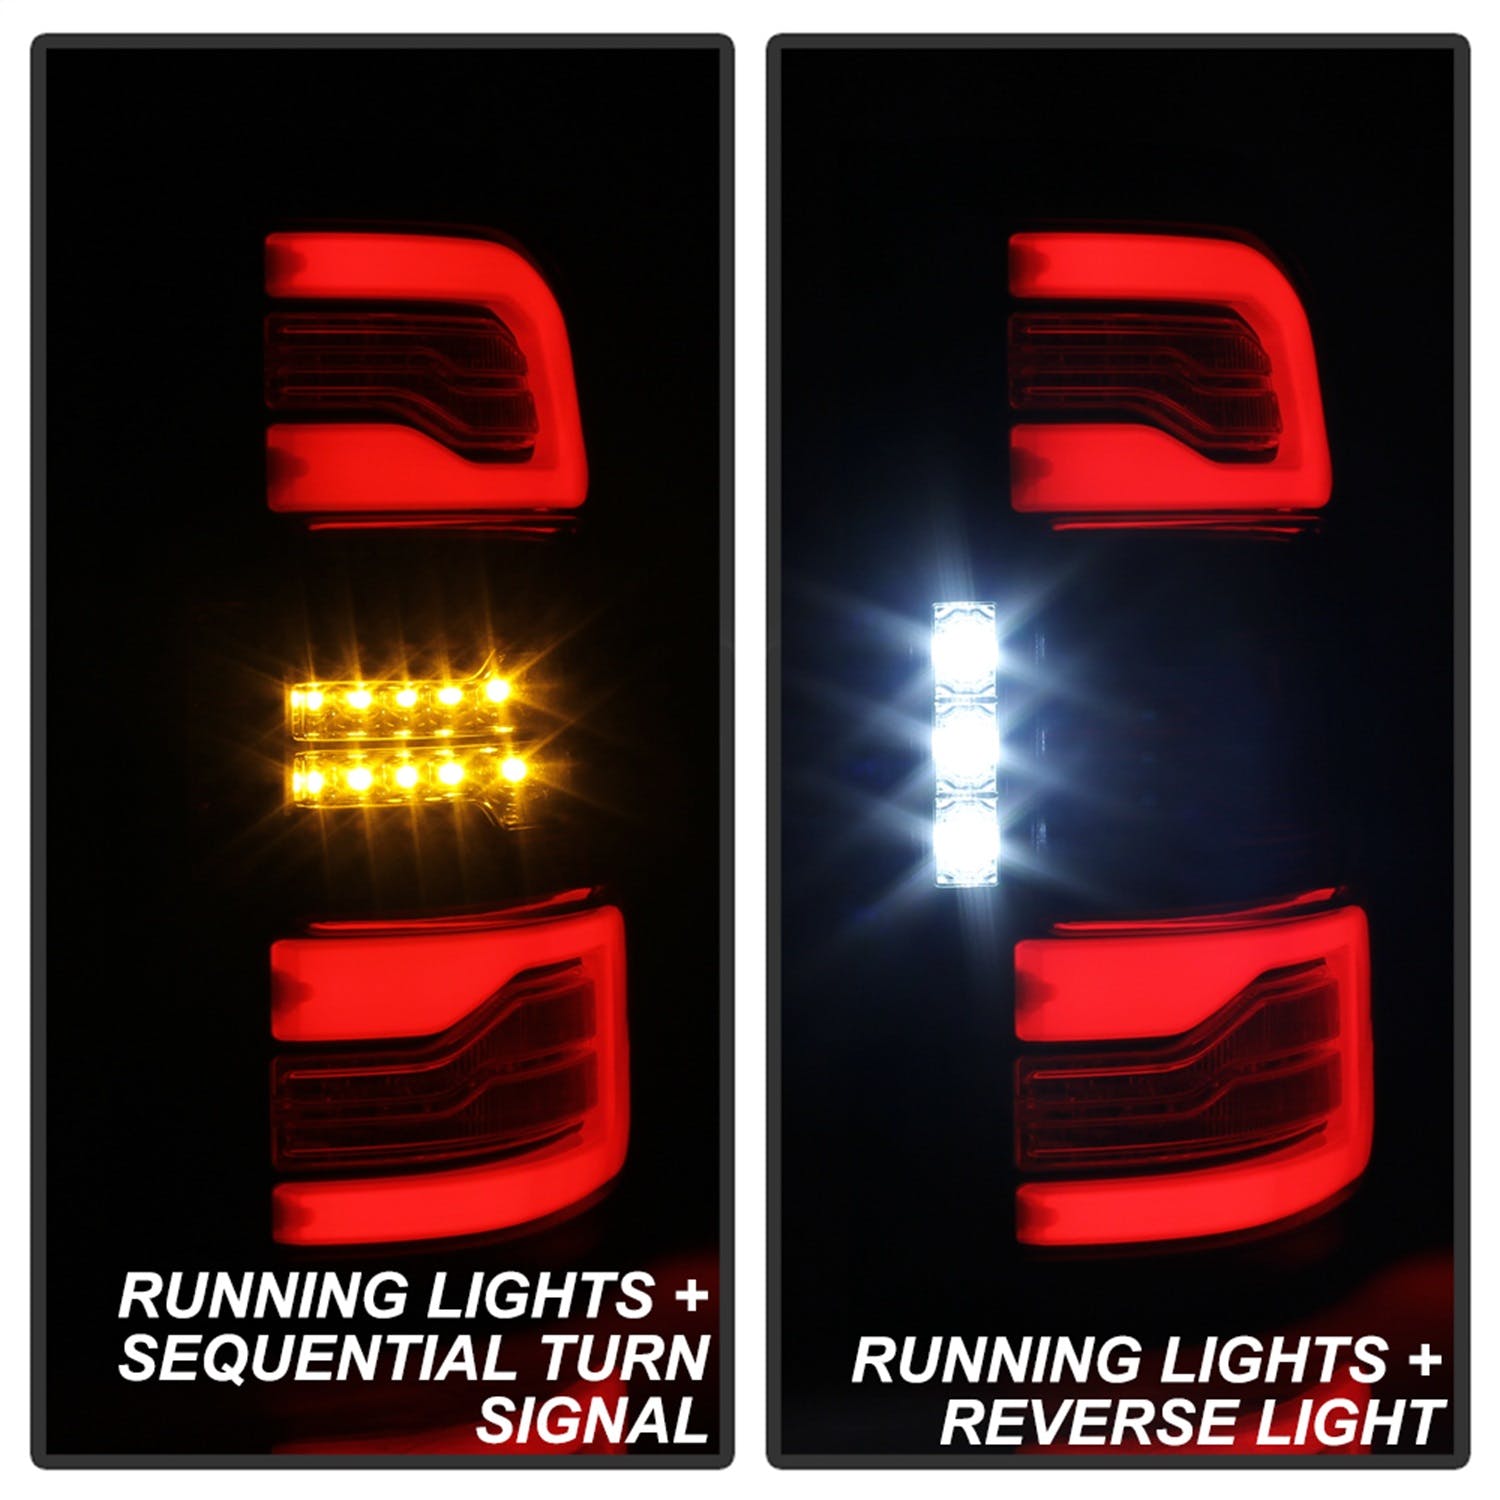 Spyder Auto 5087294 LED Tail Lights